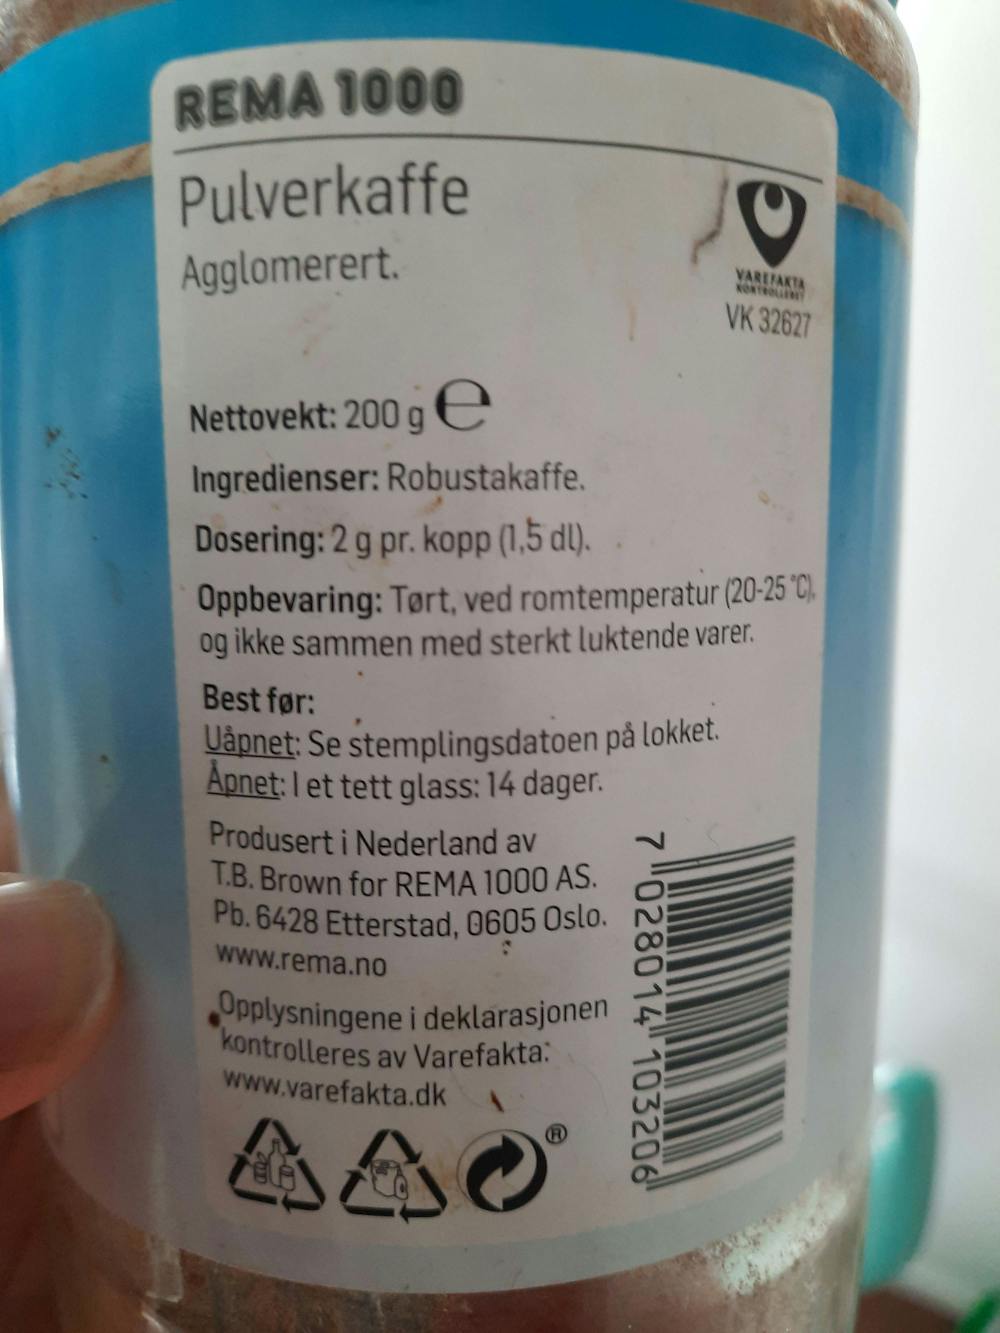 Ingrediensliste - Pulverkaffe, Rema 1000